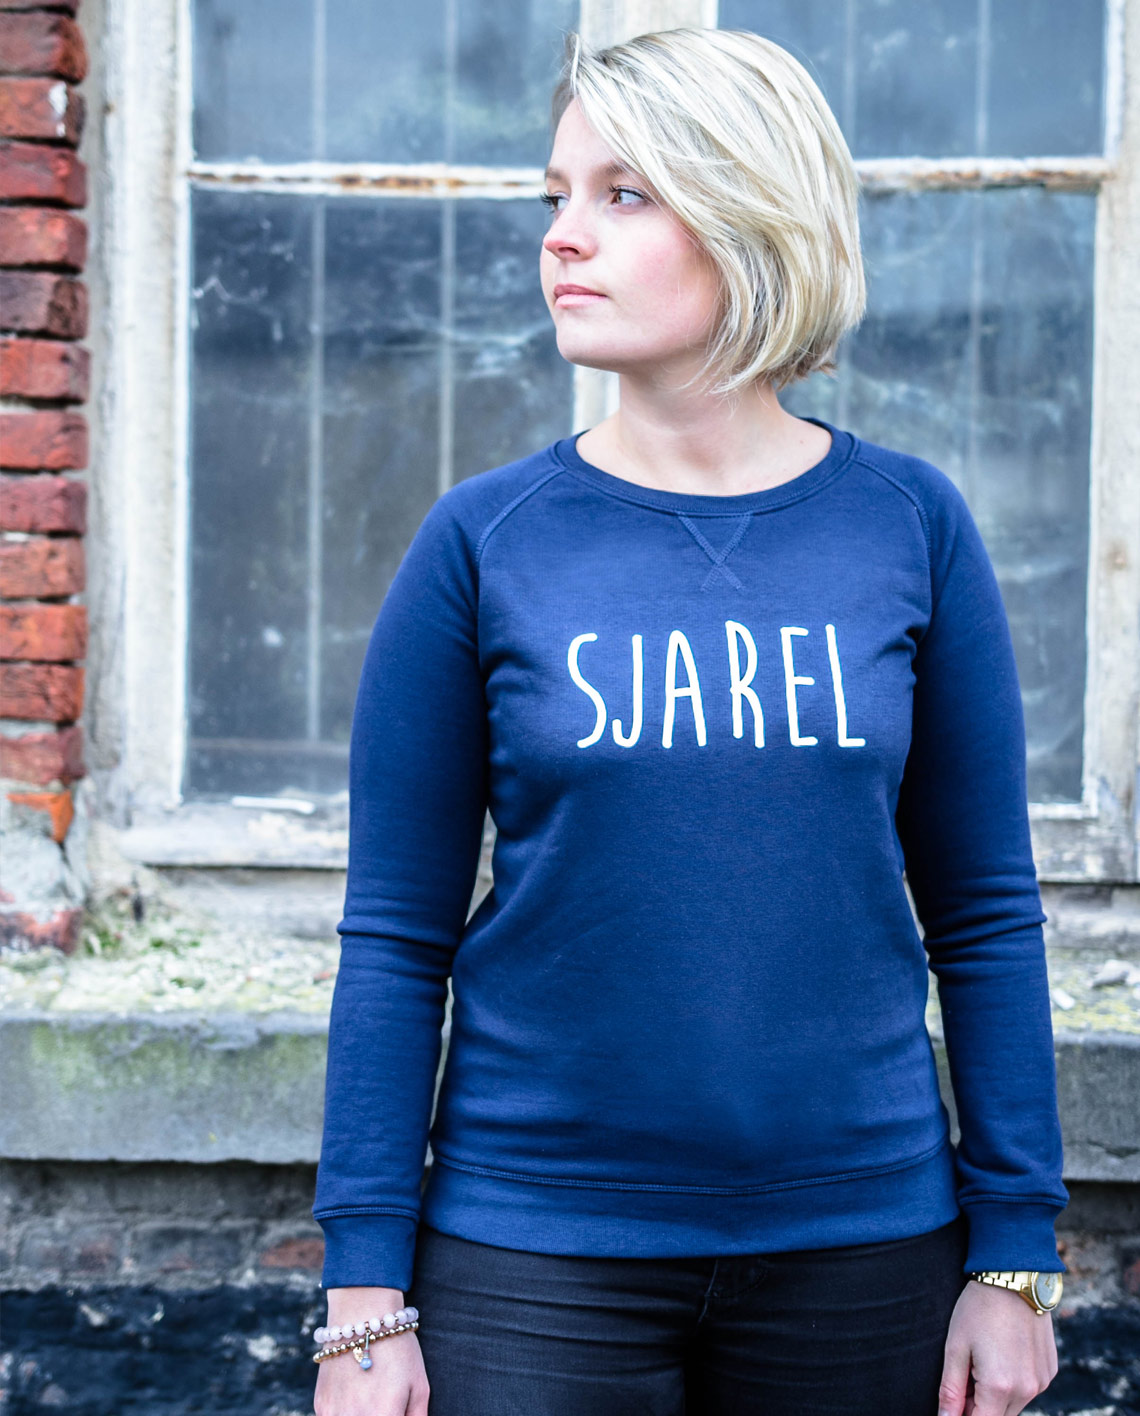 sjarel sweater online kopen vrouw